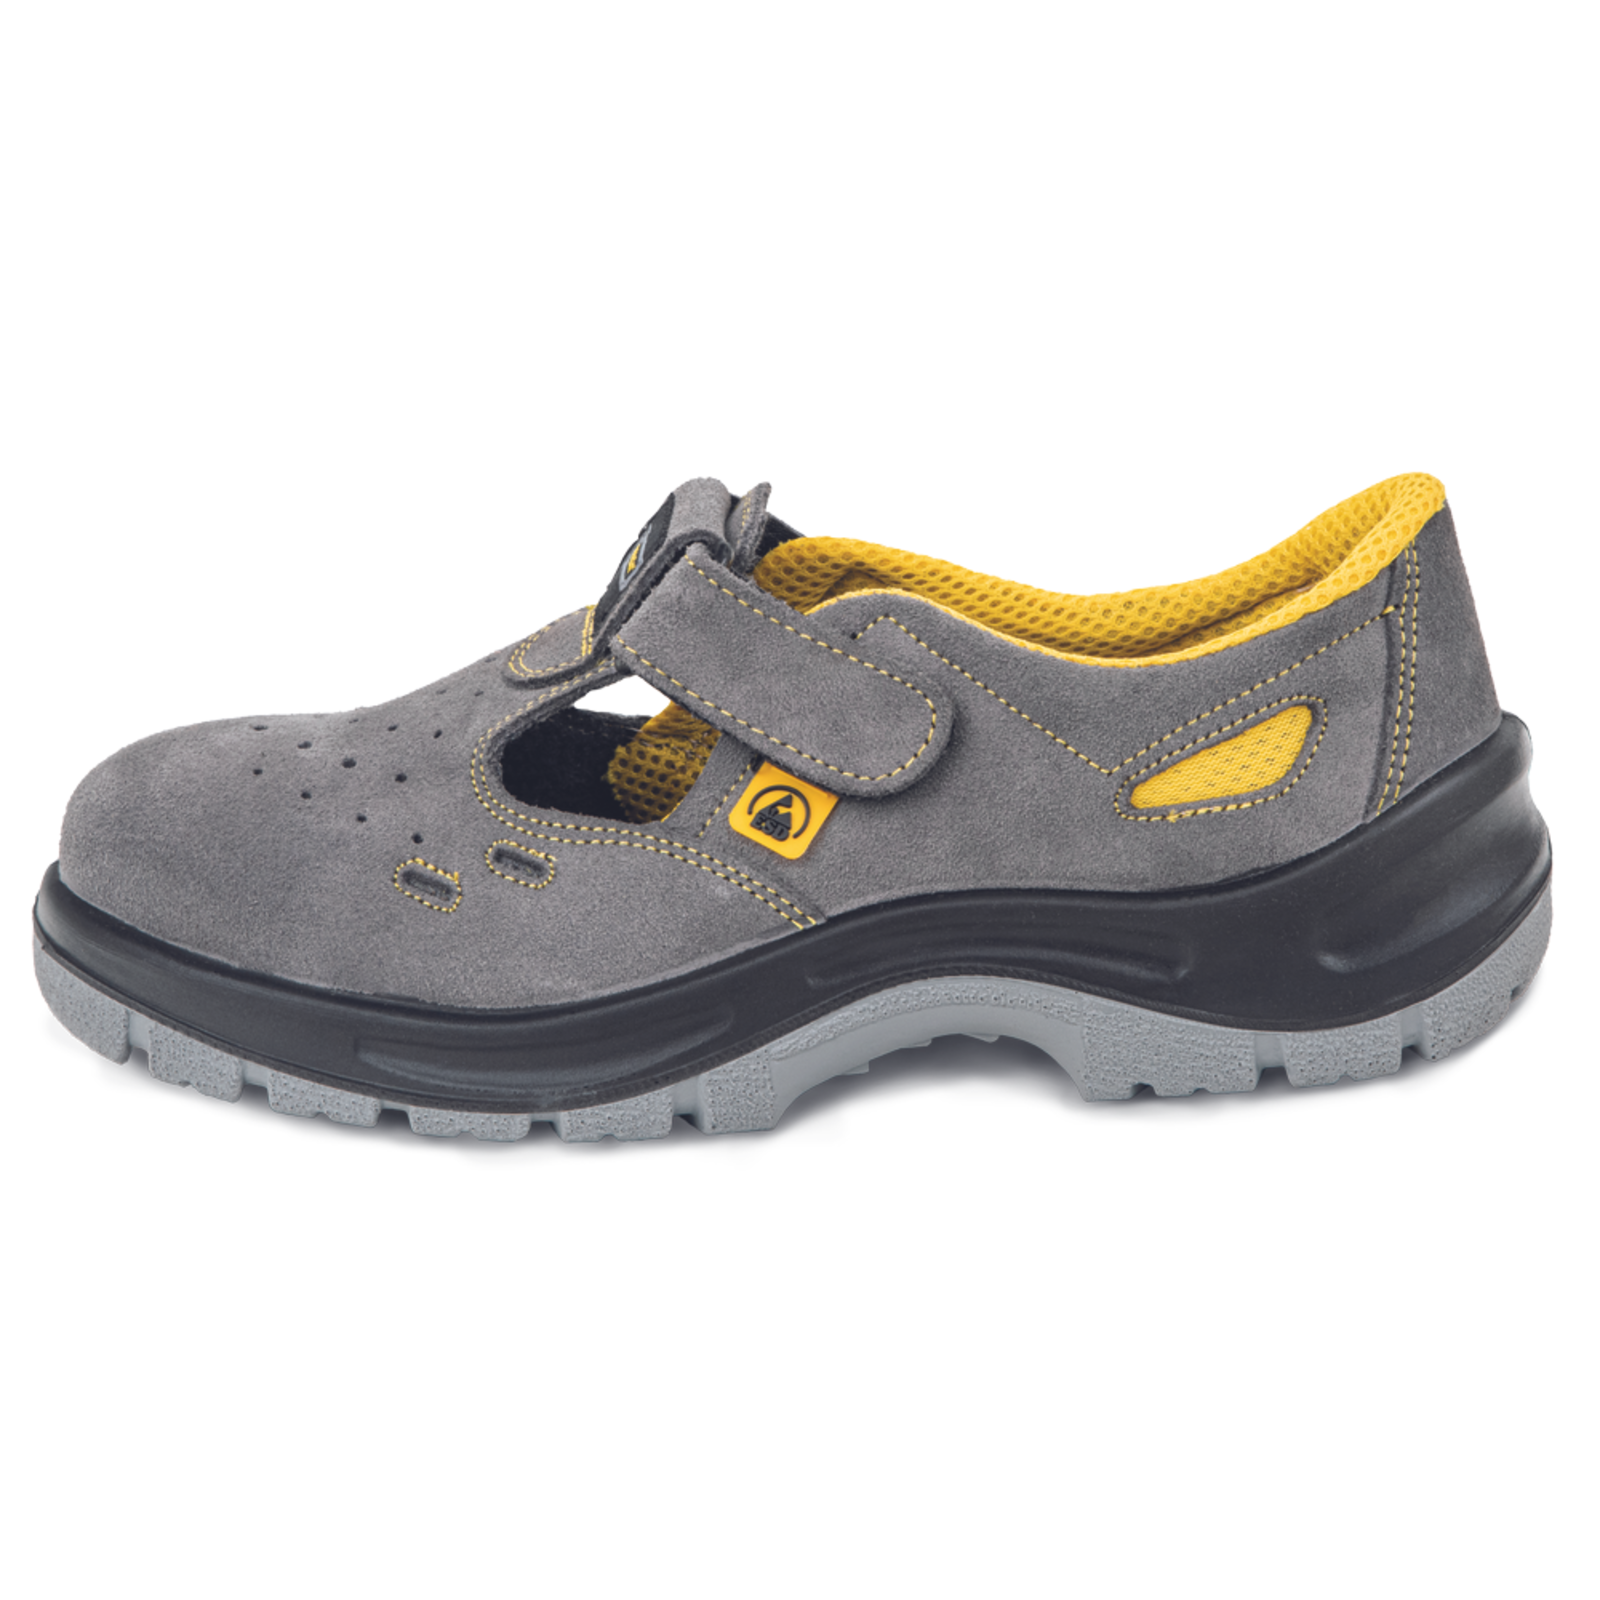 Pracovné bezpečnostné sandále Panda Selma MF ESD S1P SRC - veľkosť: 39, farba: sivá/žltá